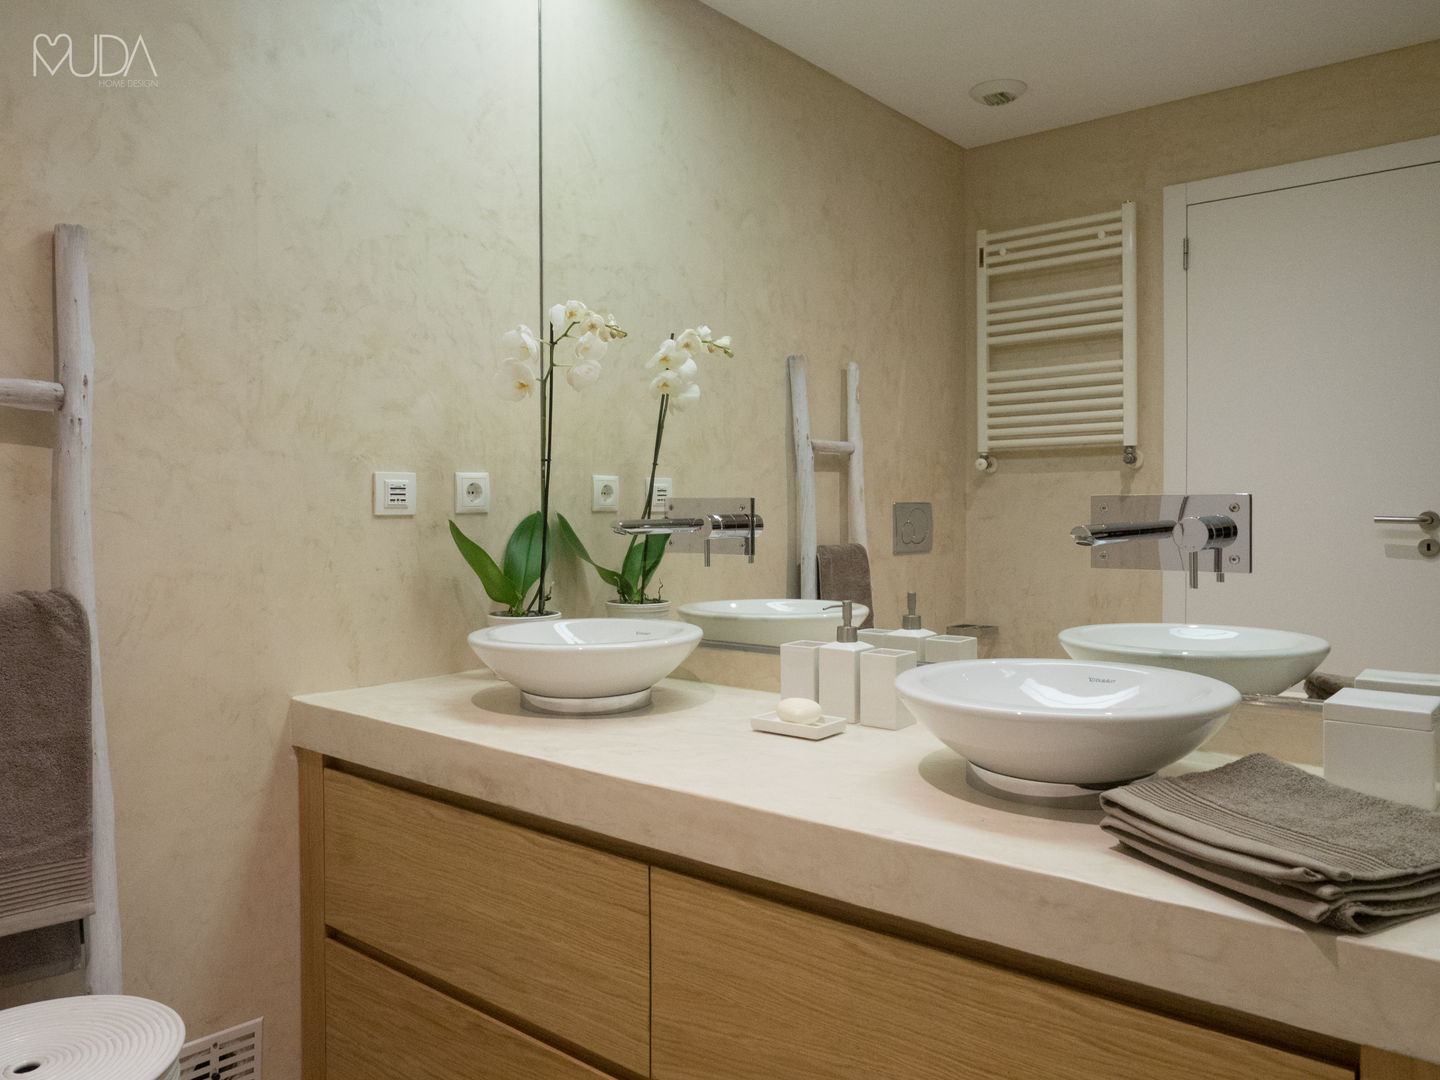 WC Corredor | Depois MUDA Home Design Banheiros modernos